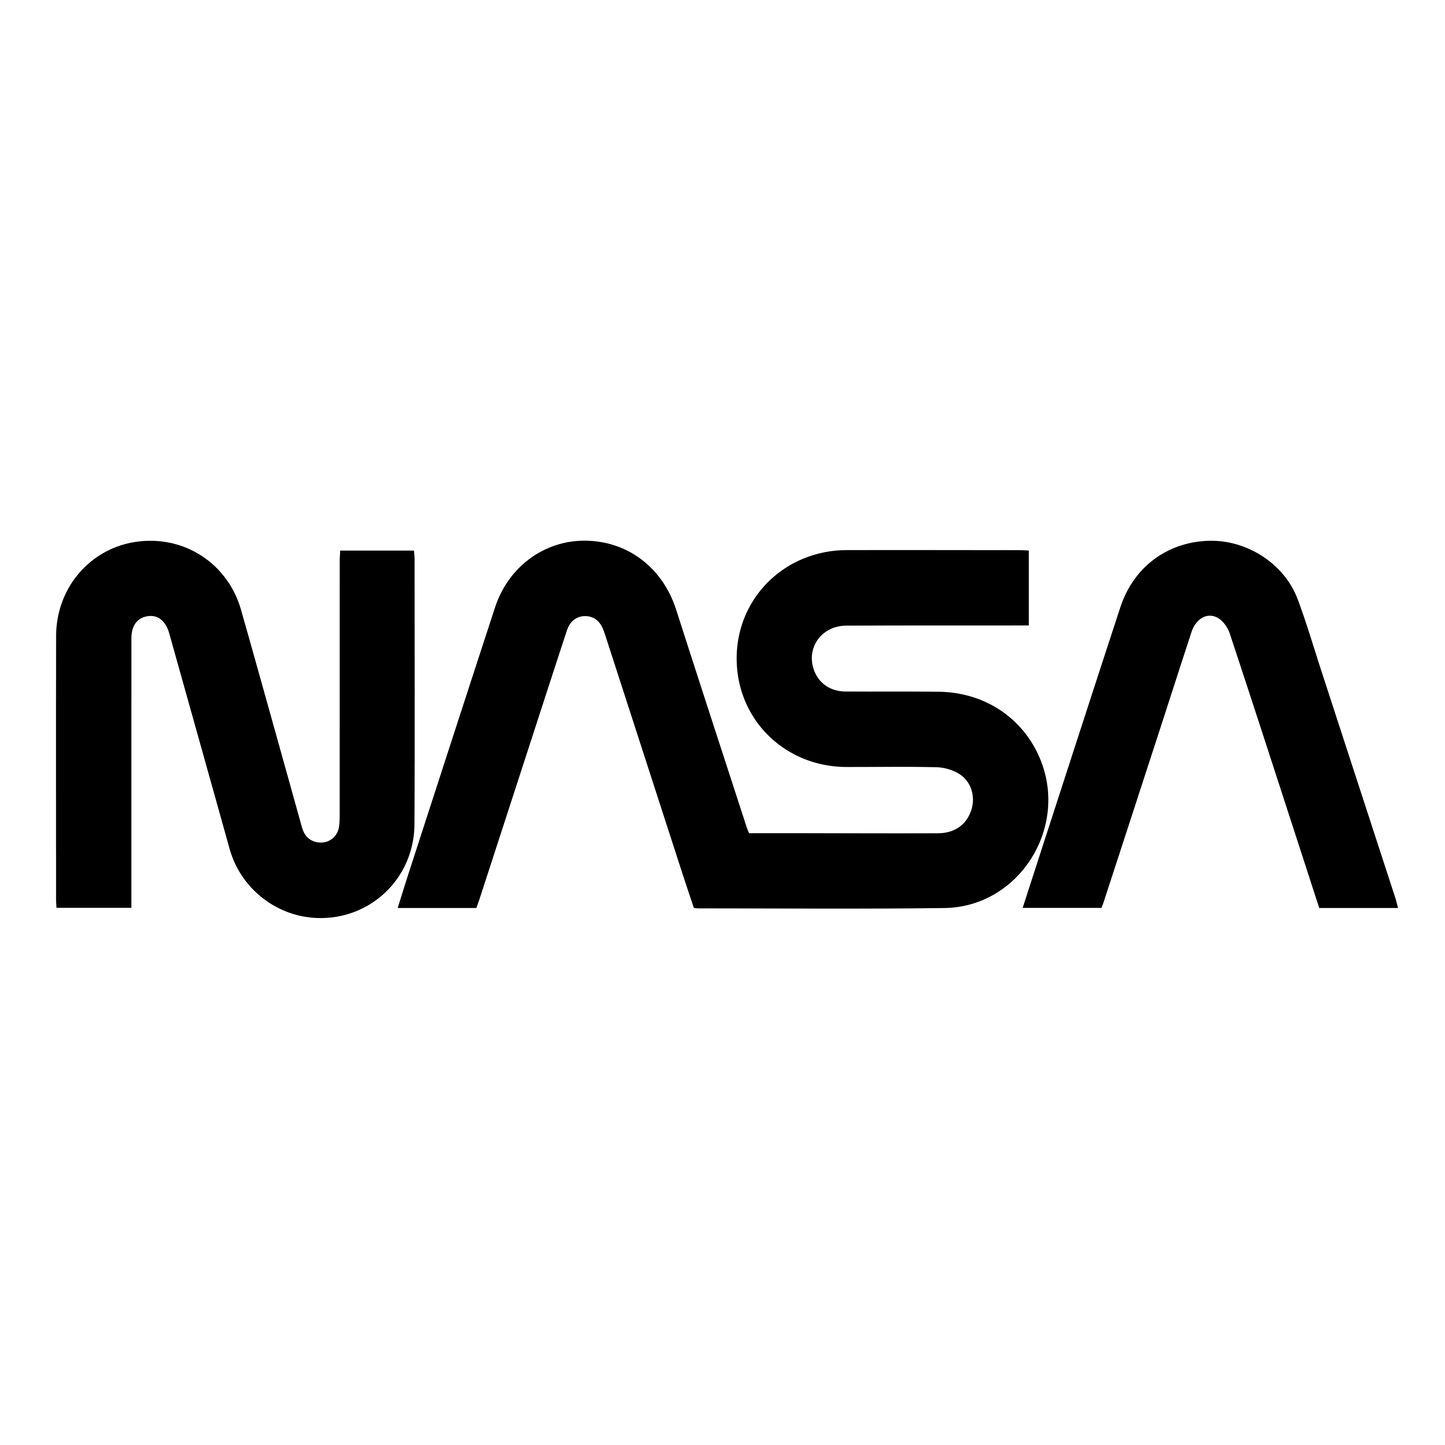 NASA Official Worm Logo